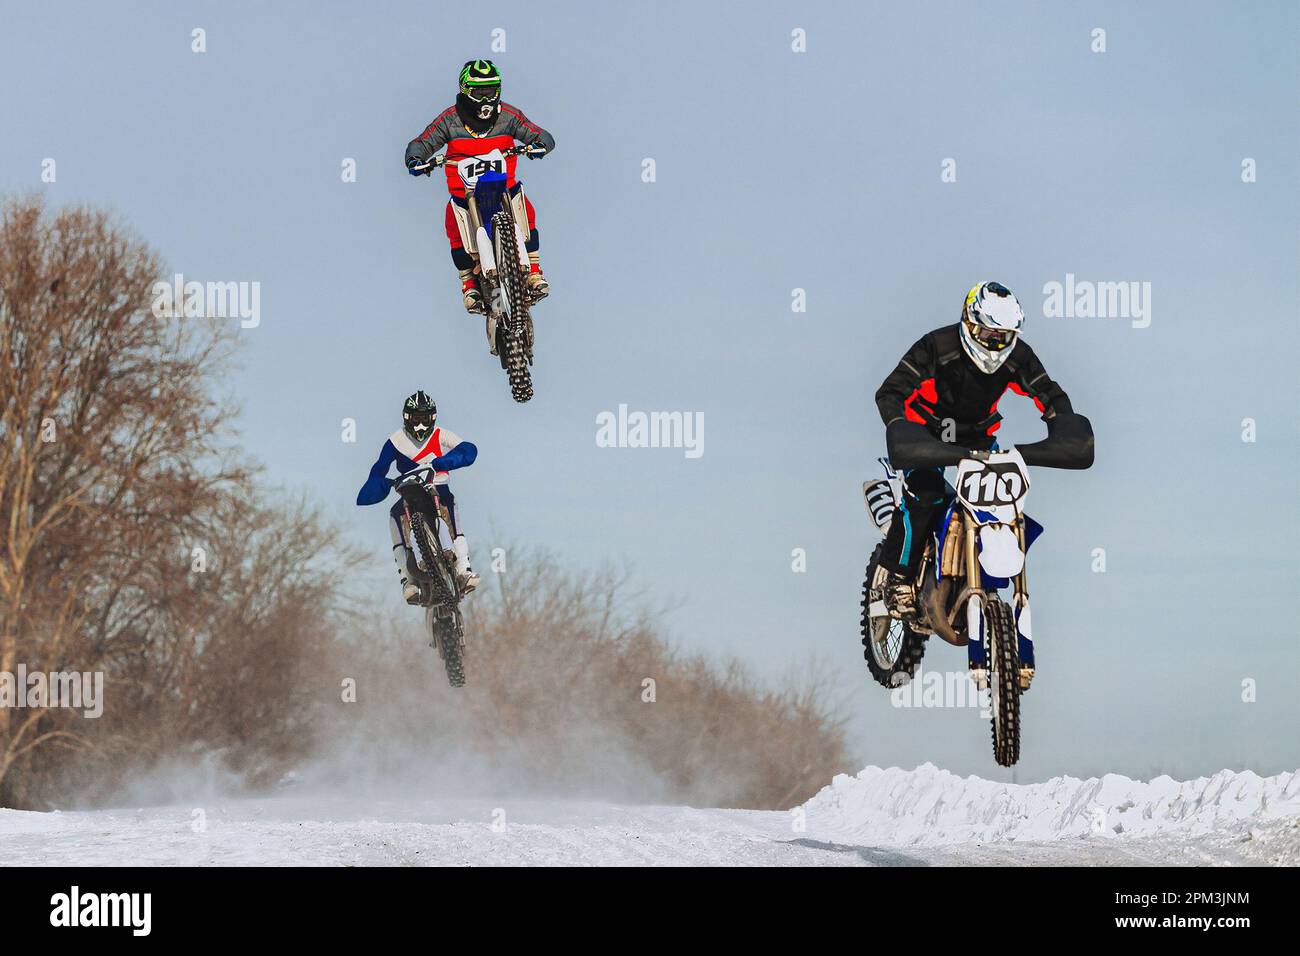 Motocross-Fahrer, der auf einem verschneiten Sprungbrett springt, im Winter Off-Road-Motorradrennen Stockfoto